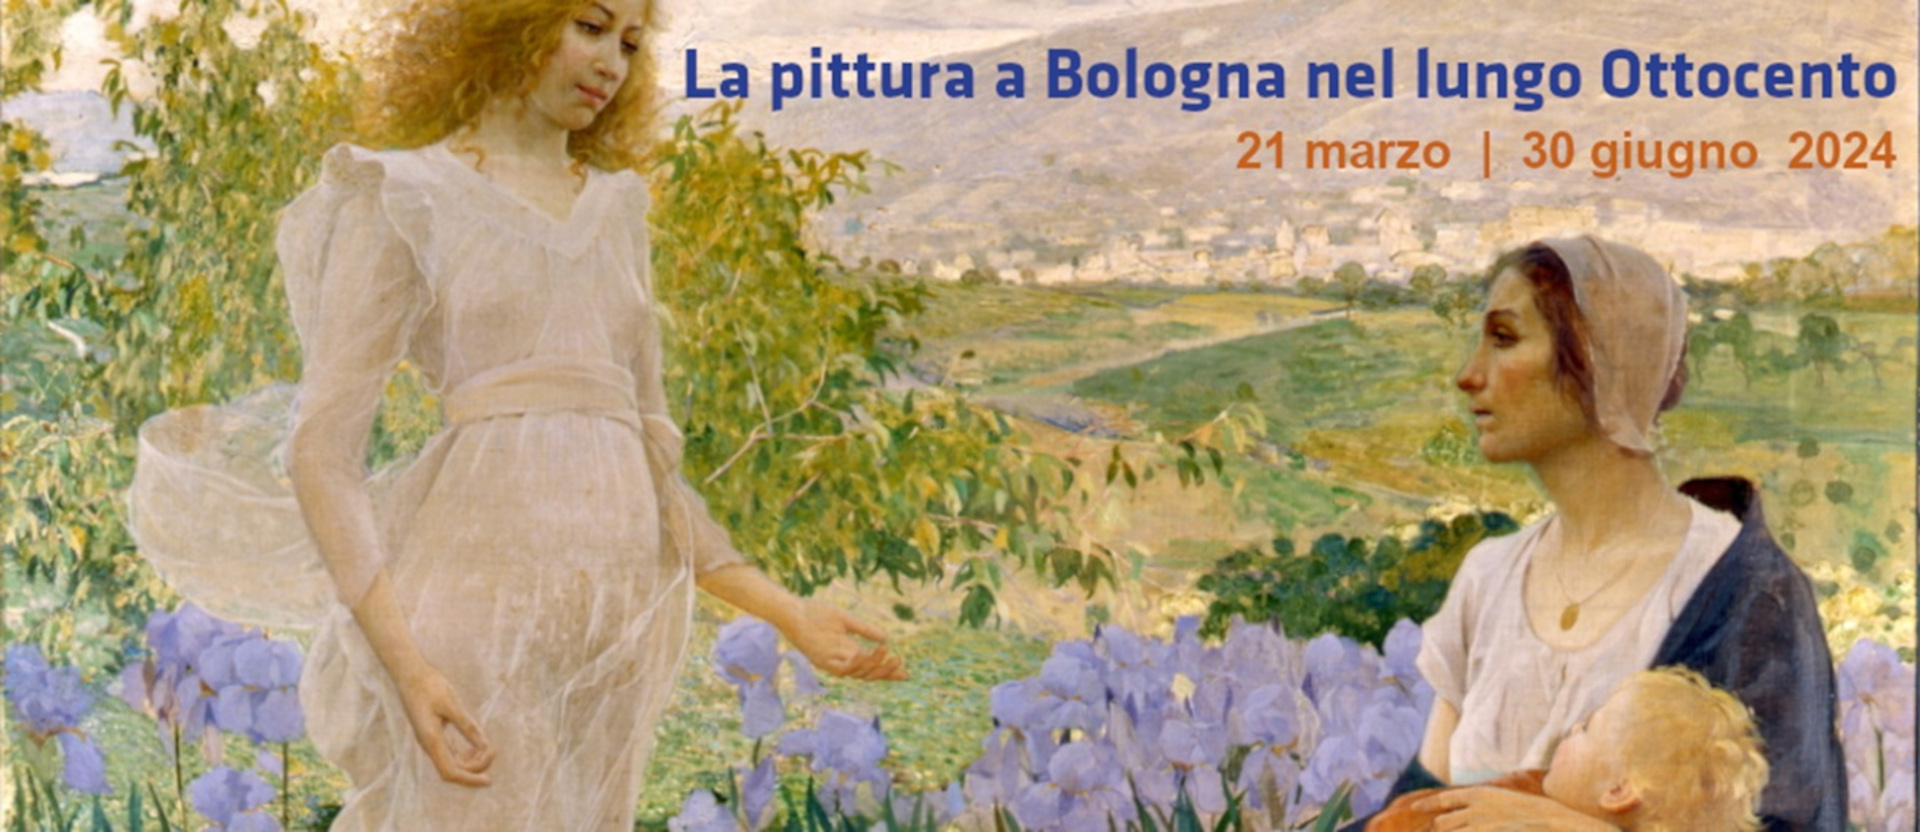 Dettaglio dal programma della mostra La pittura a Bologna nel lungo Ottocento